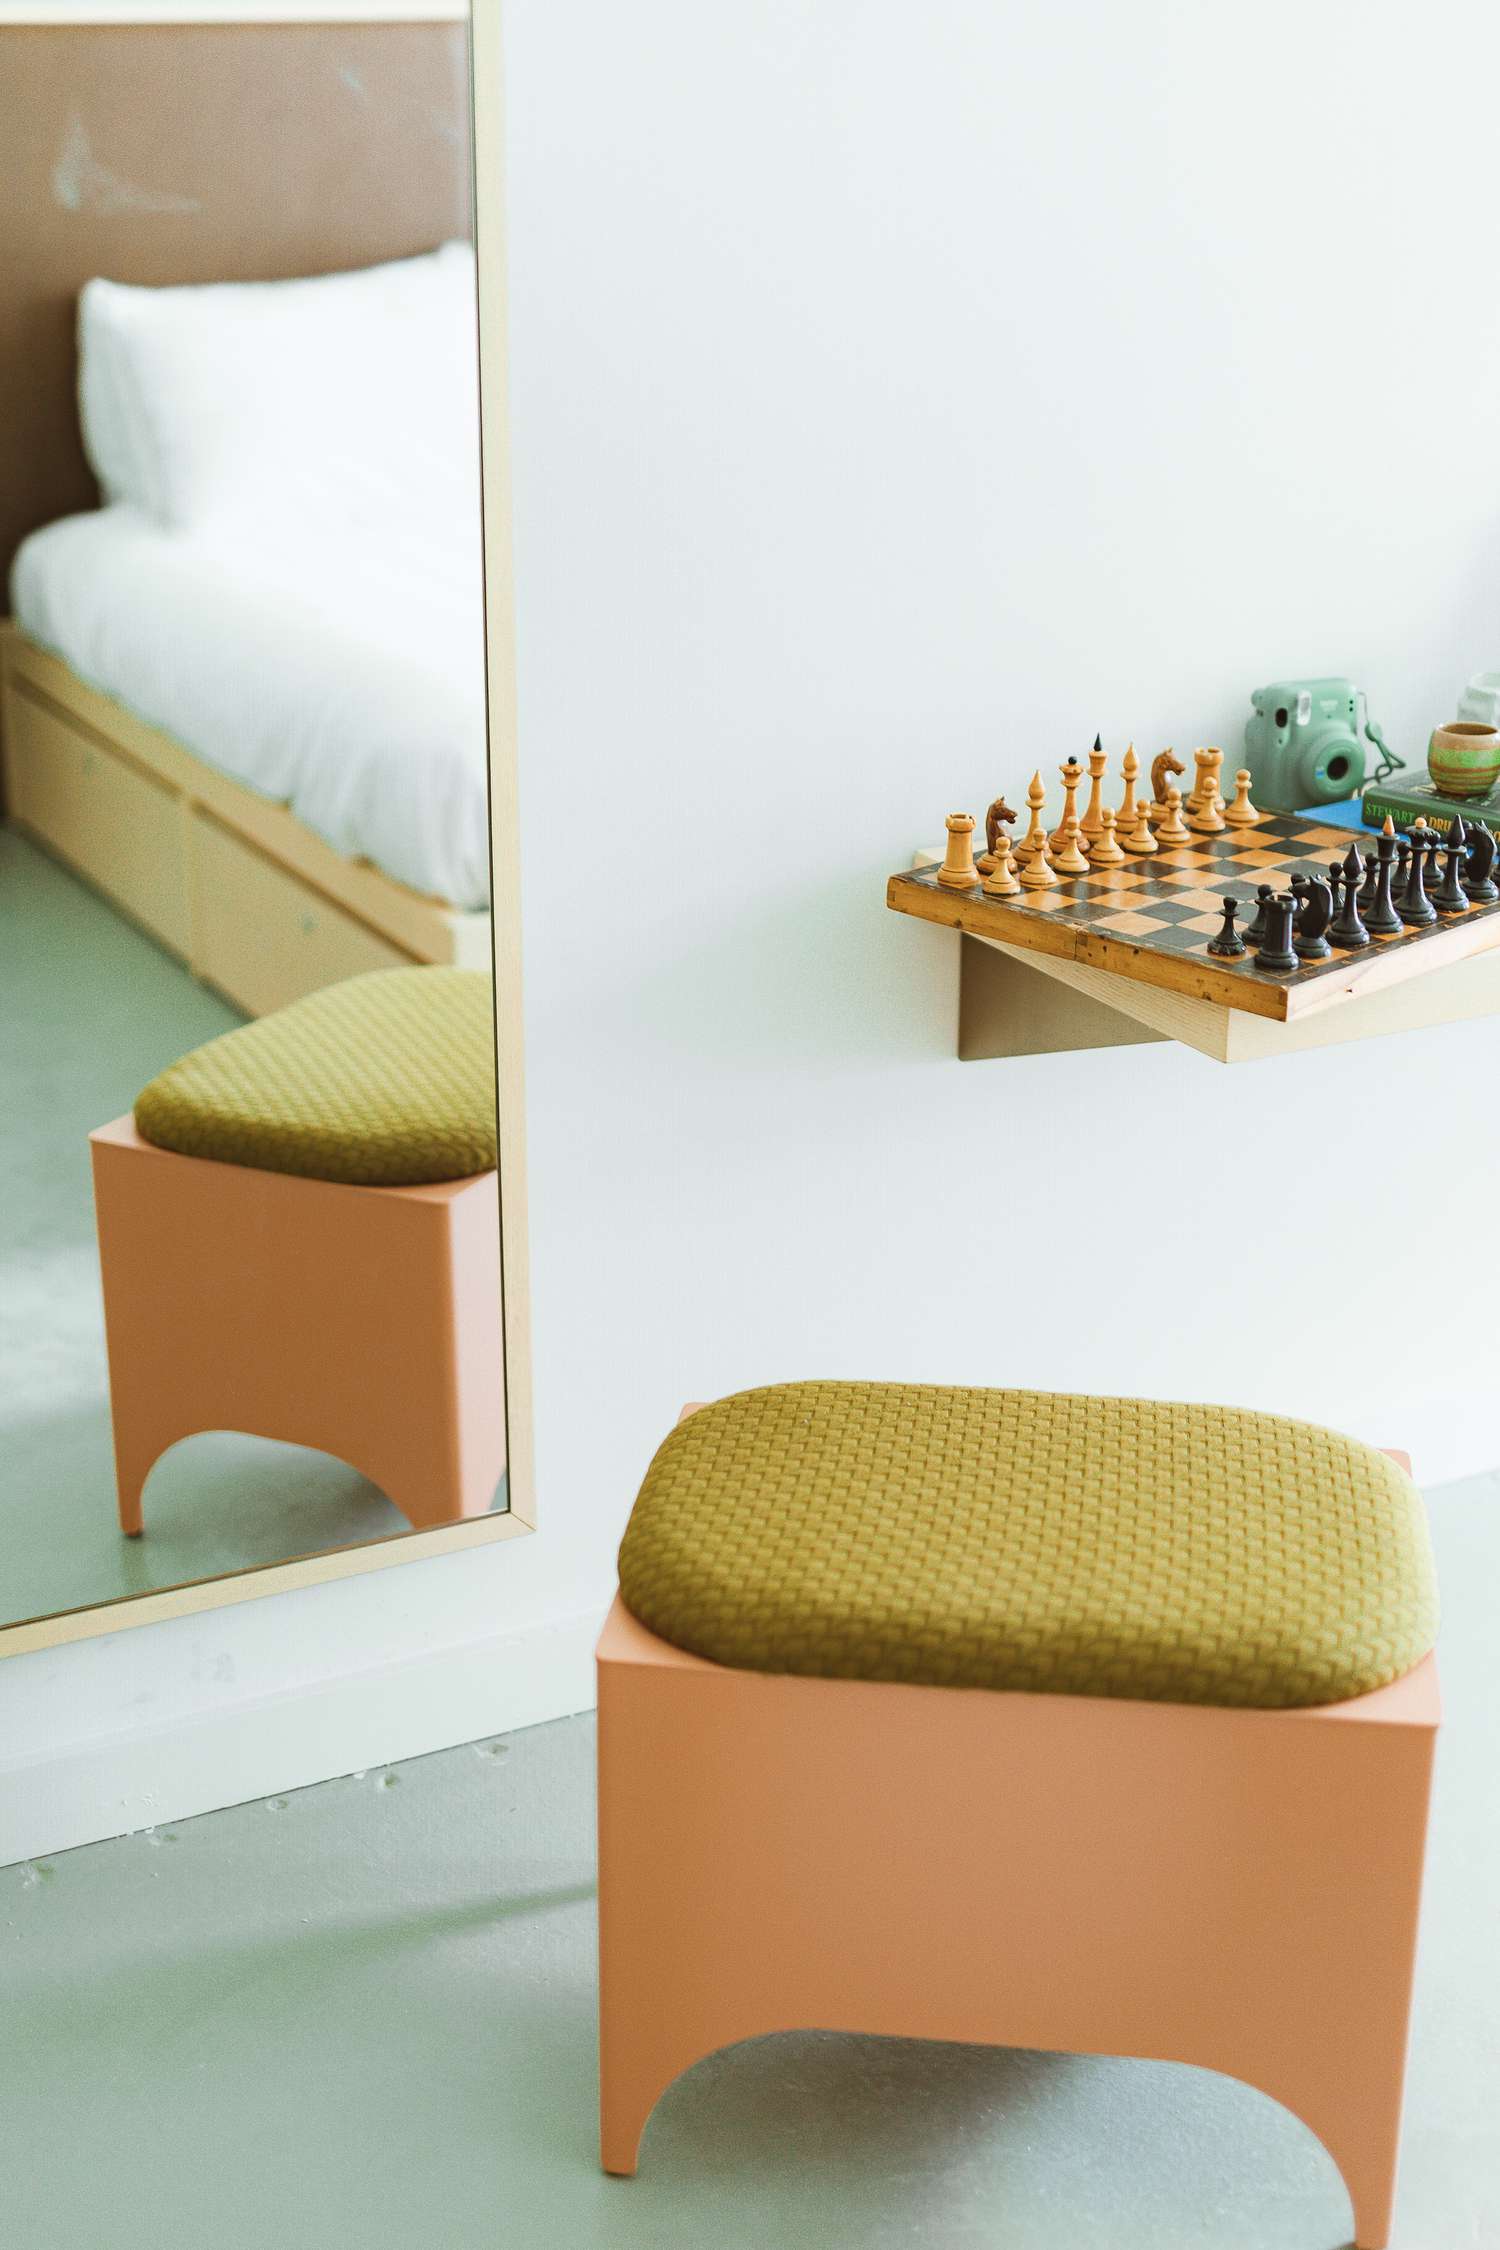 suite de hotel con taburete petite y juego de ajedrez